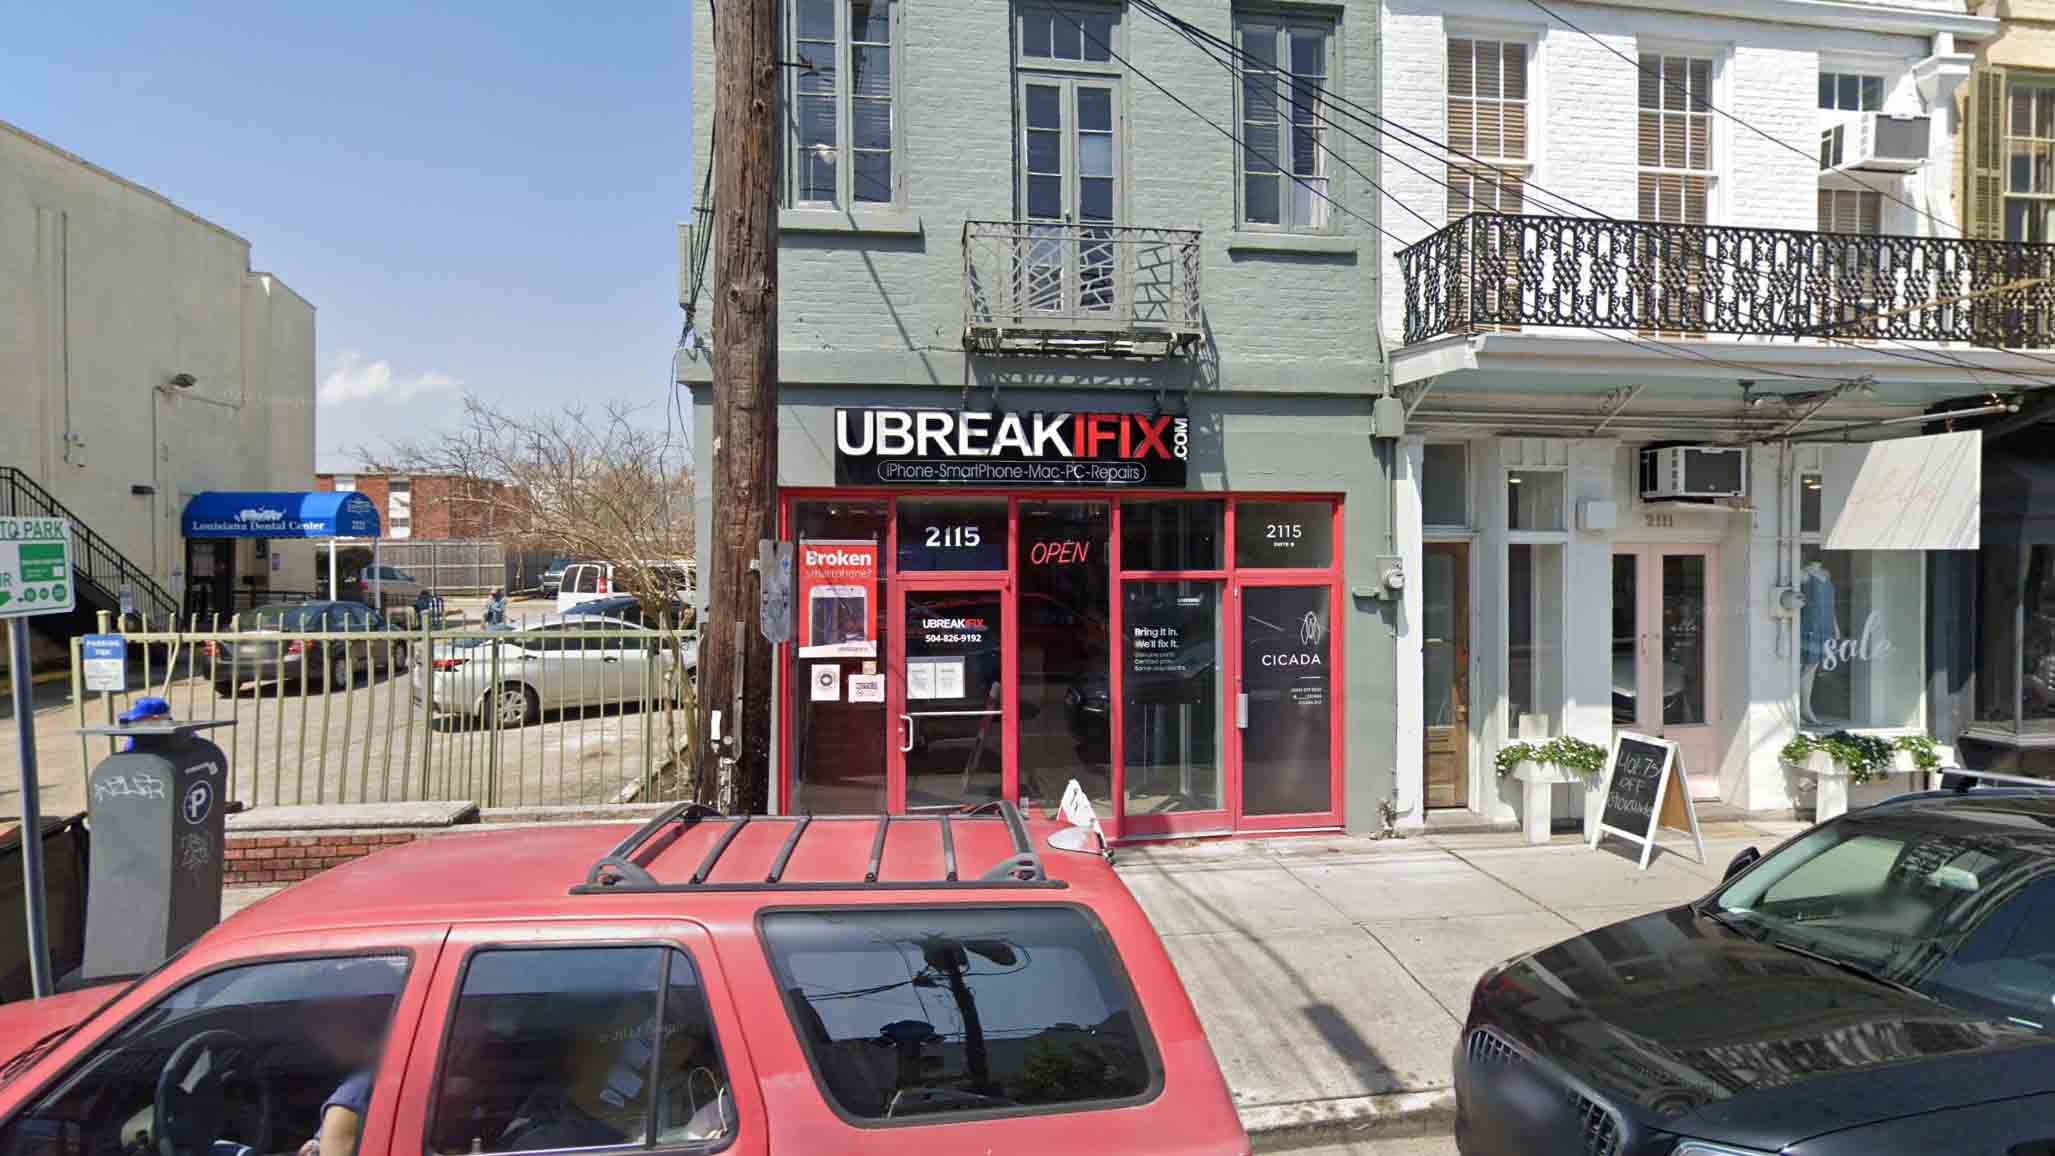 uBreakiFix in New Orleans